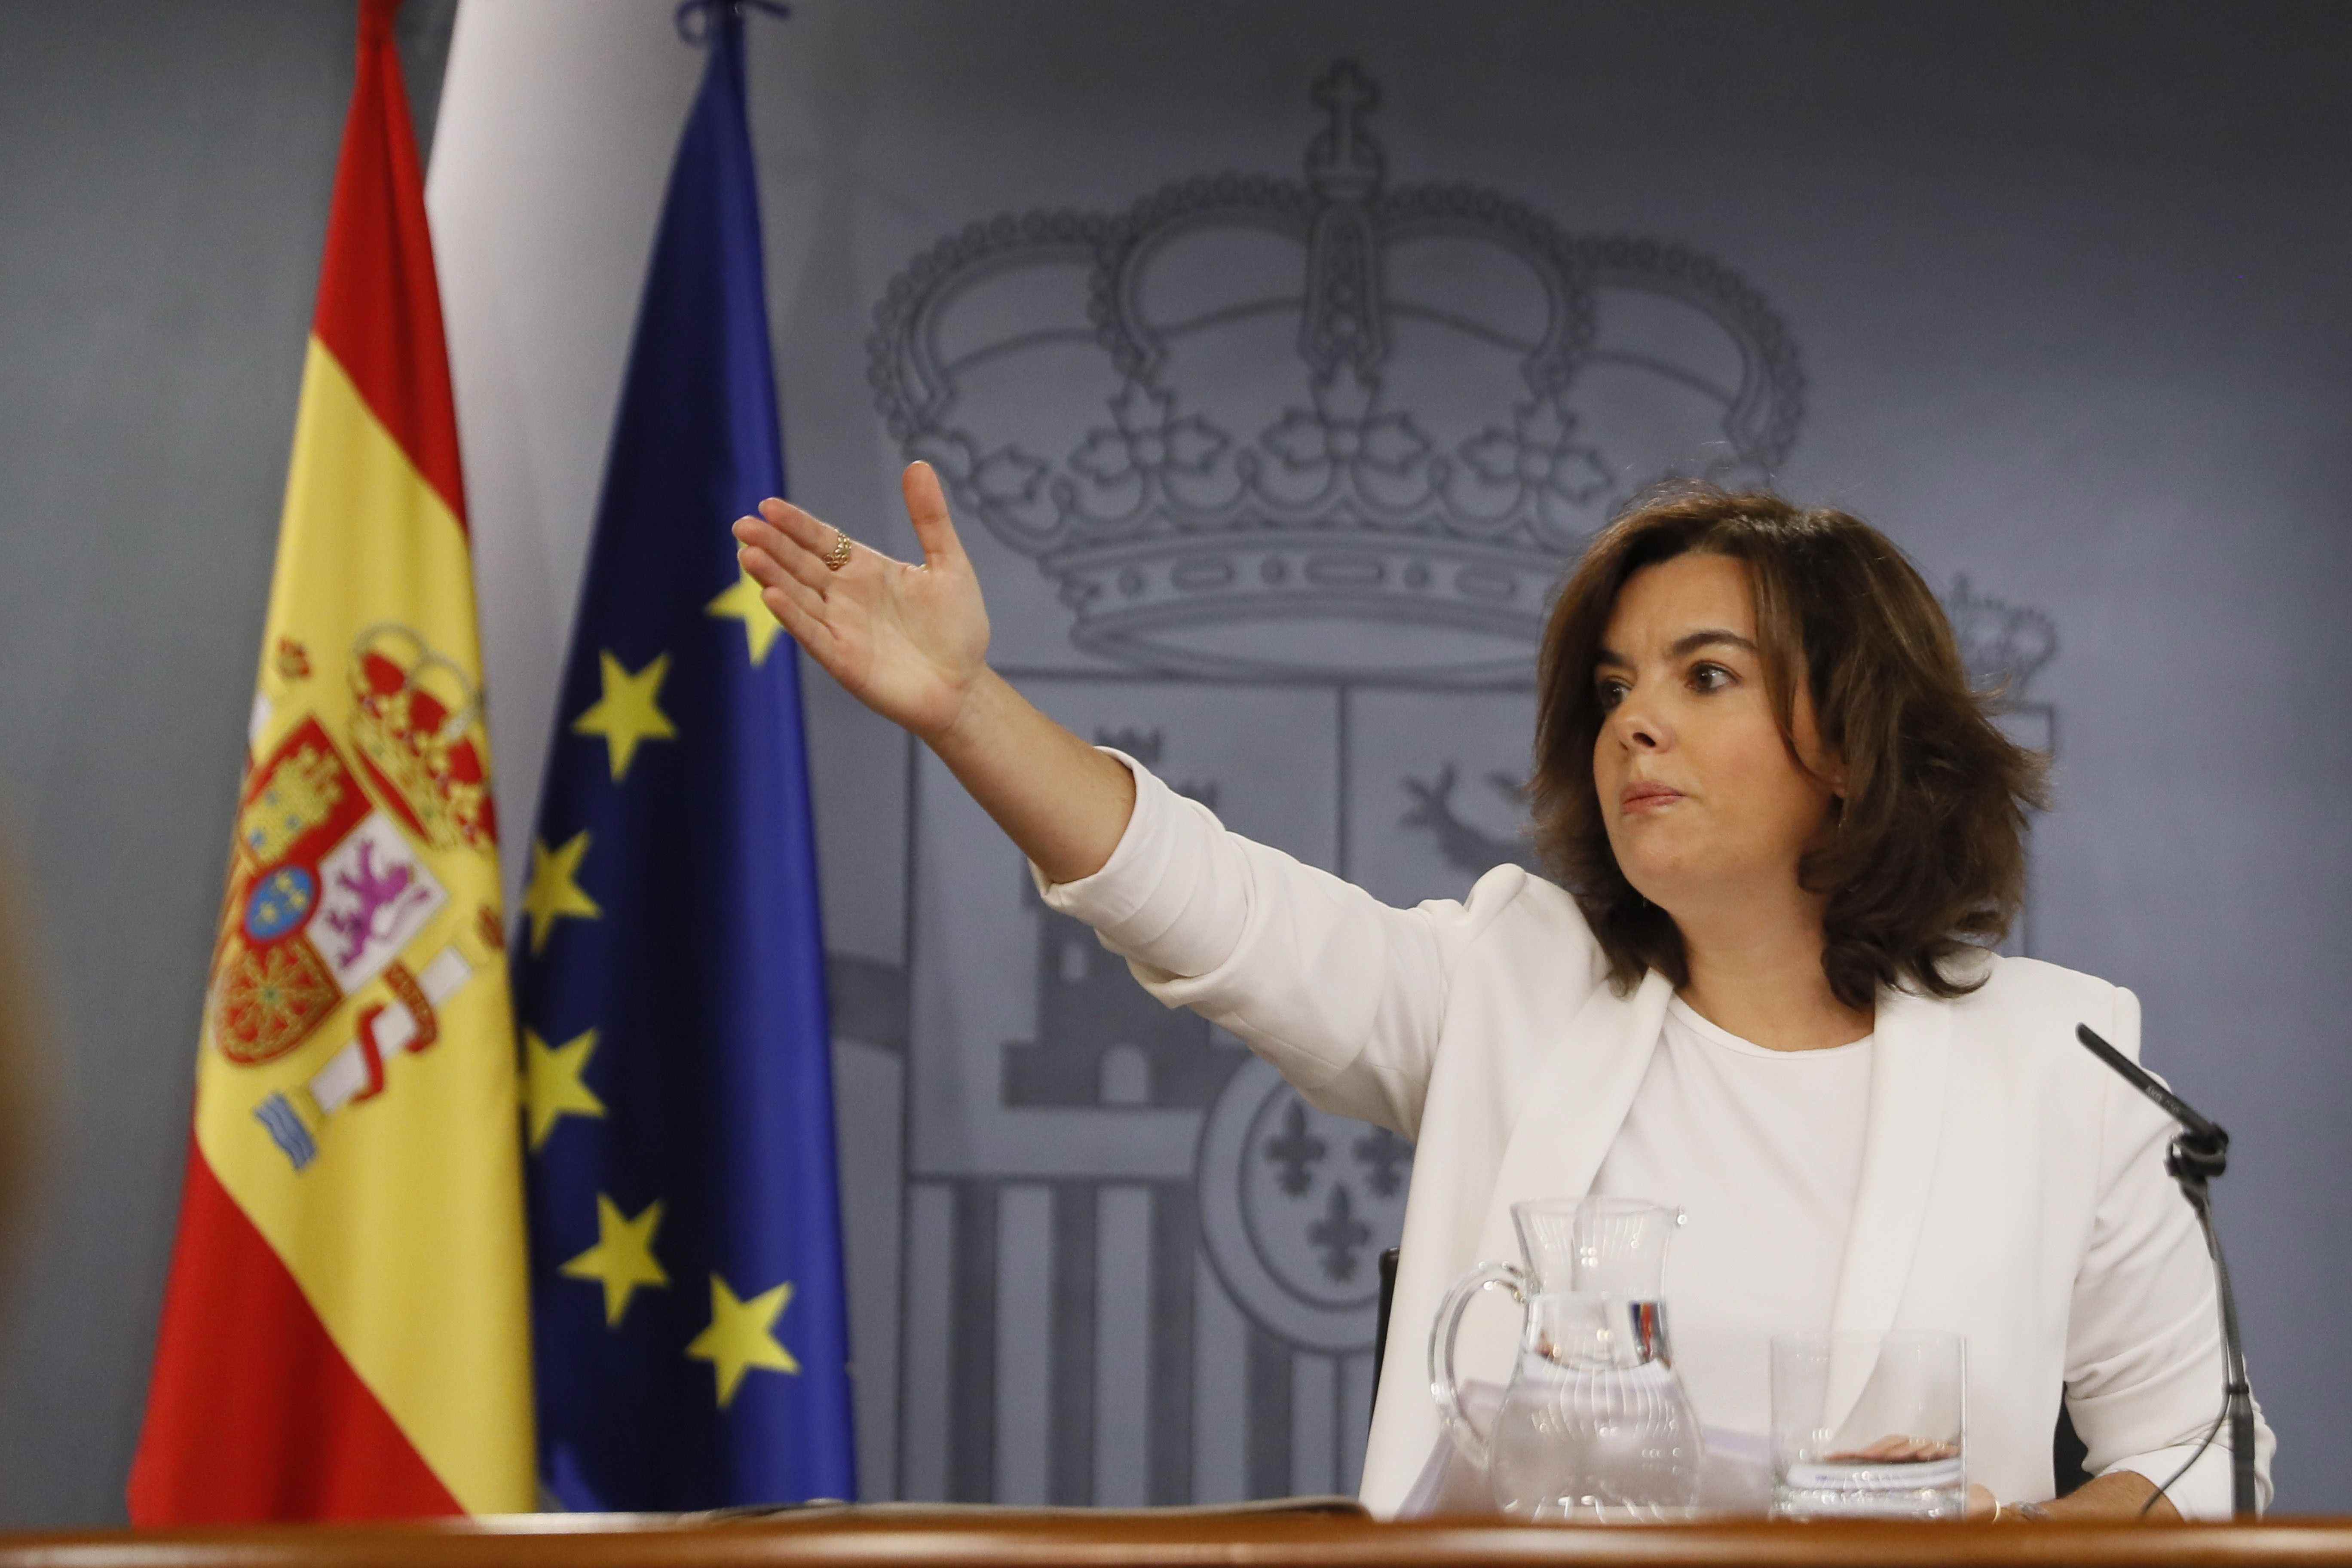 La Moncloa intentará acercarse a Puigdemont a cambio de cesiones